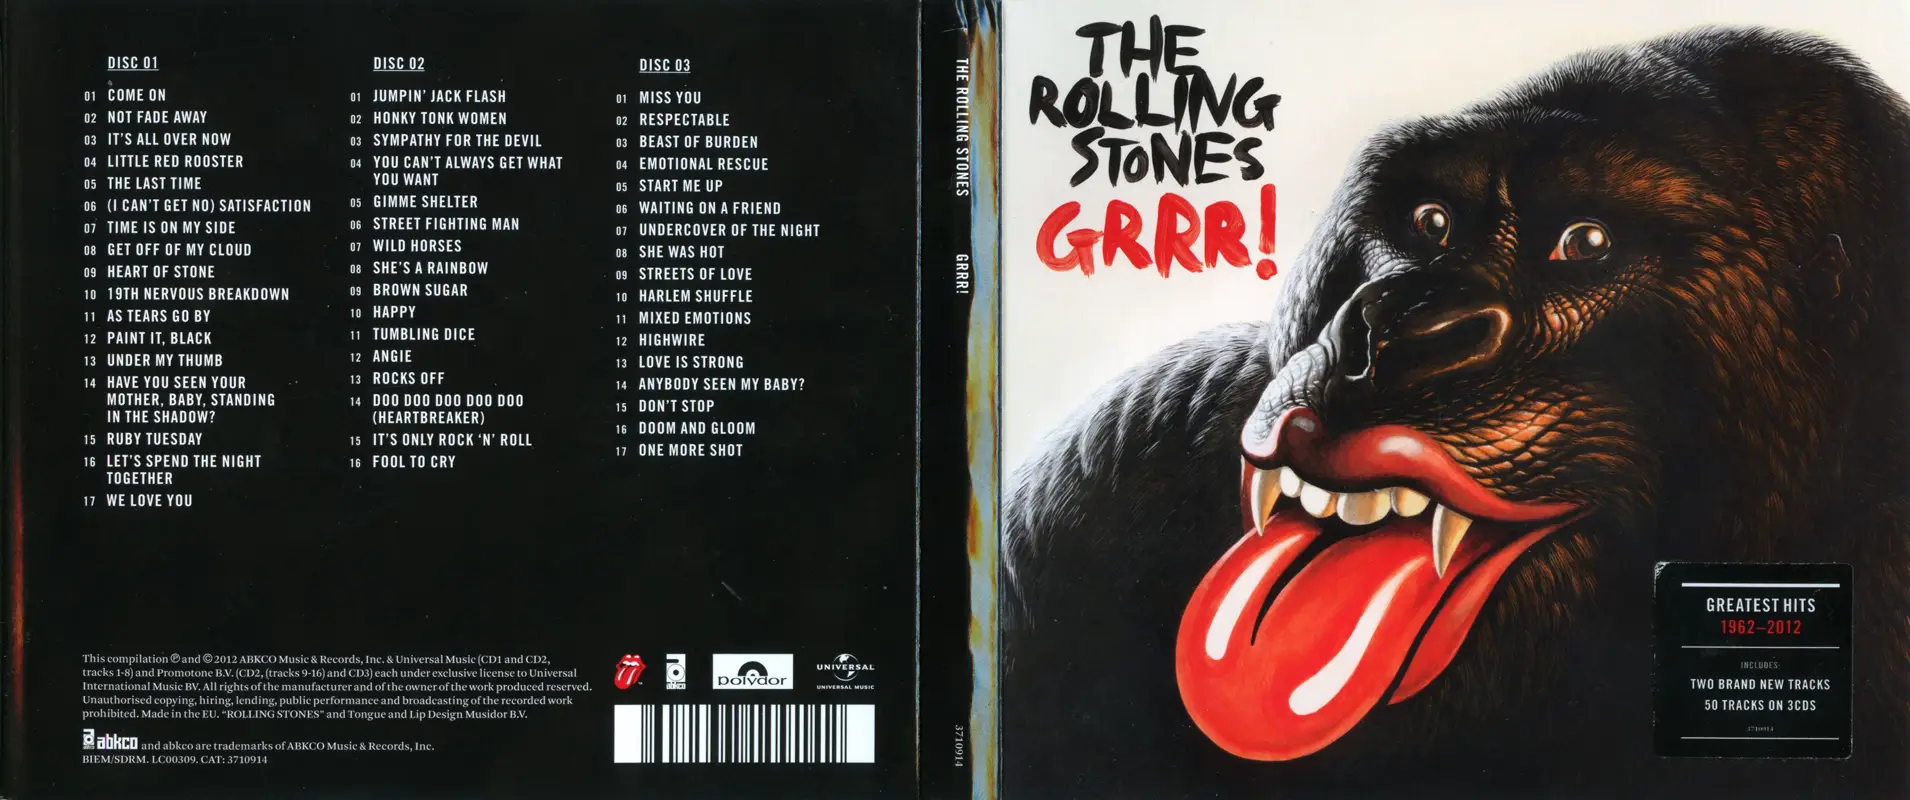 rolling stones grrr tour